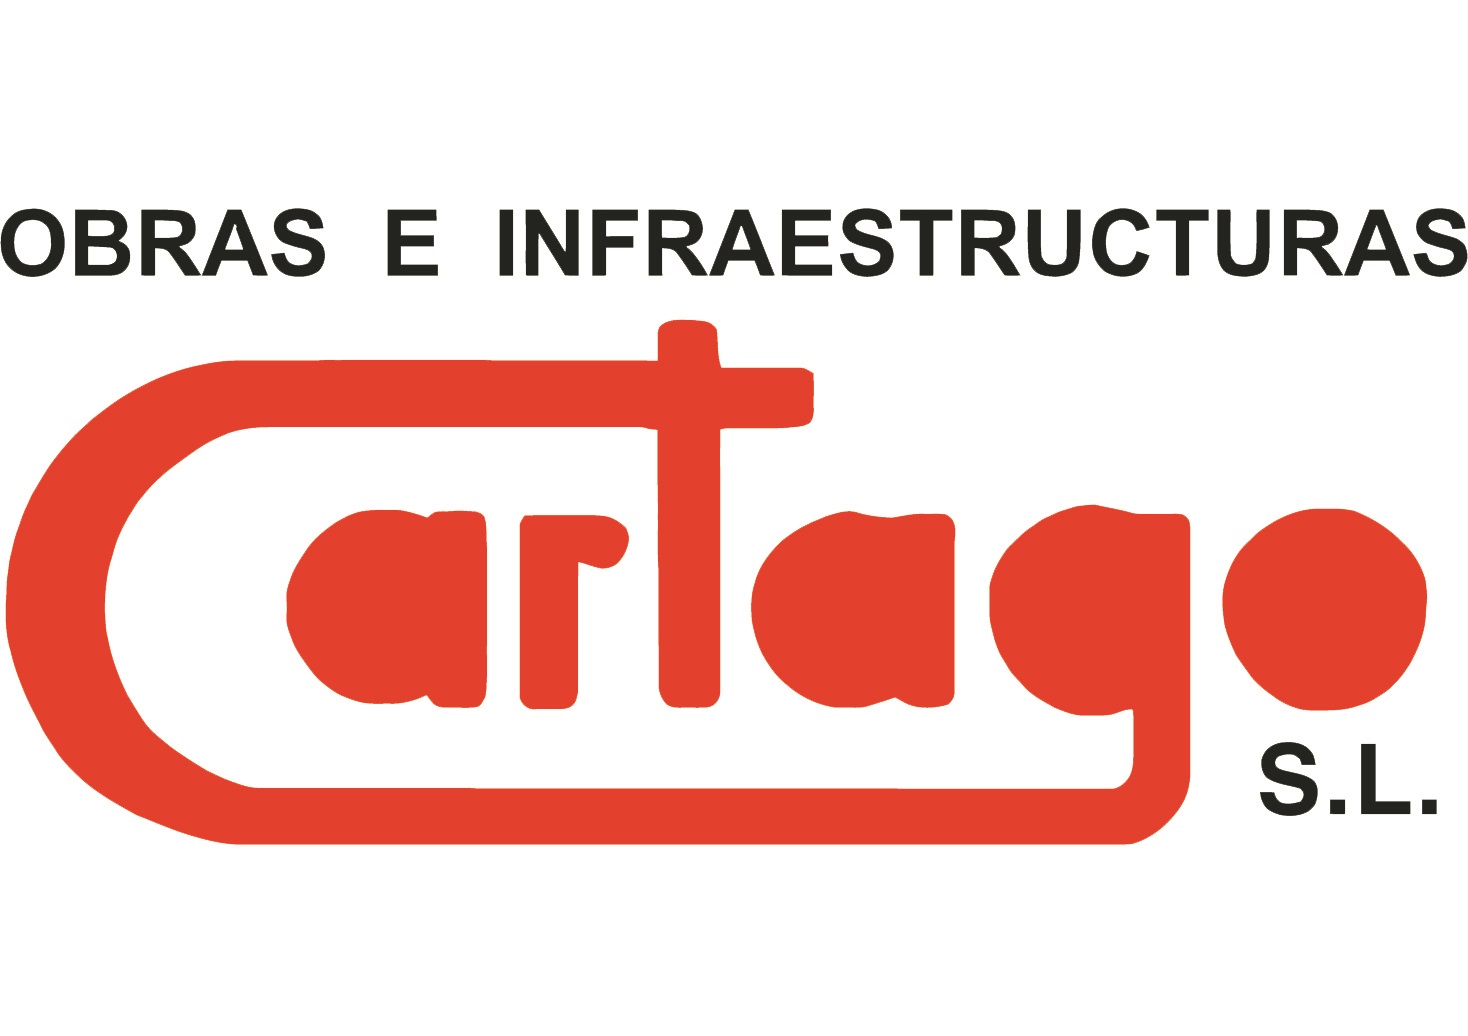 POLIGONO CARTAGO (BA�OS Y MENDIGO) - Estructuras metálicas, construcción de estructuras metálicas, construcción de naves industriales, construcciones industriales